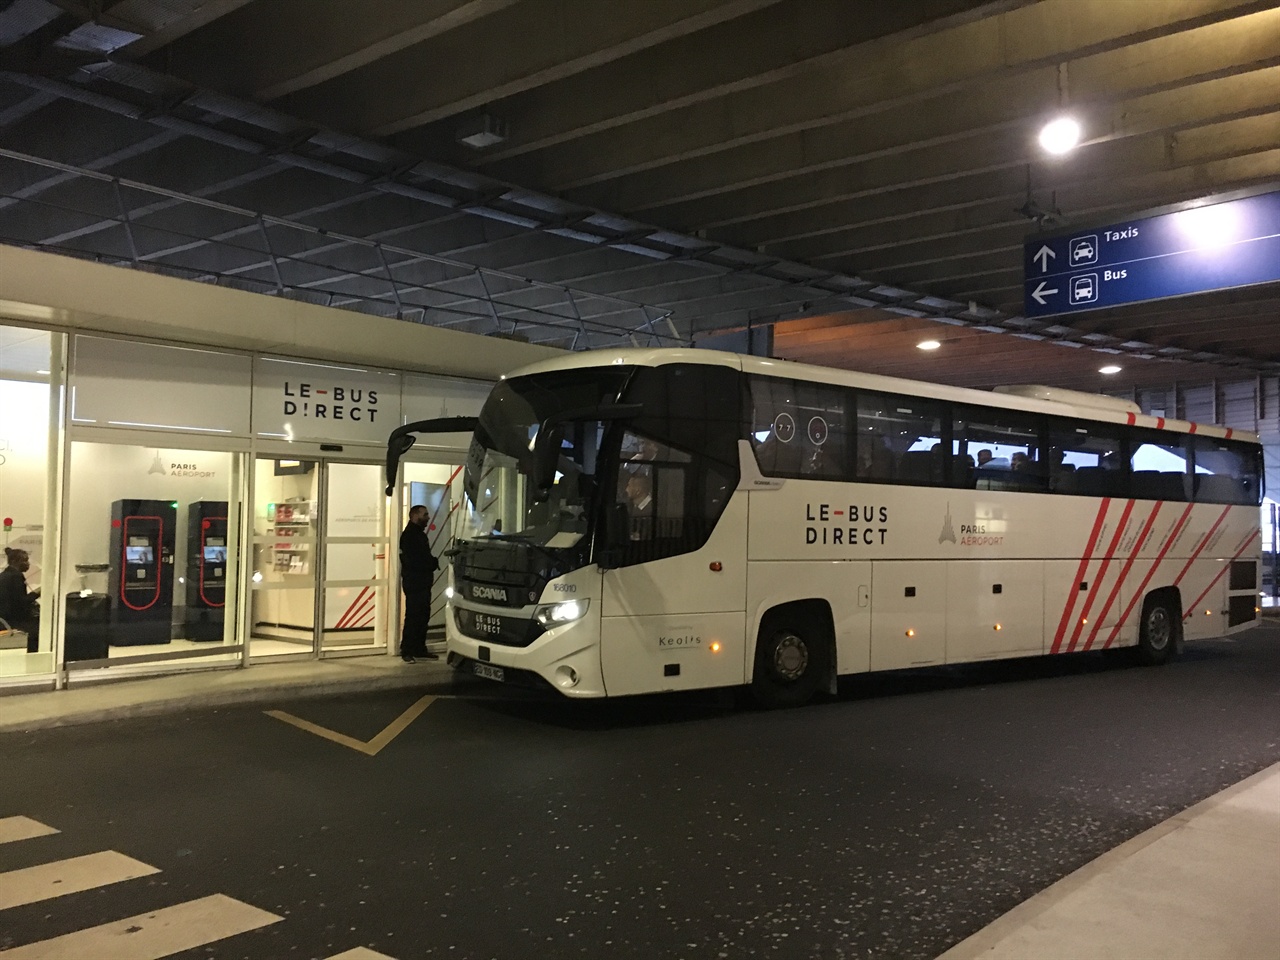  에어프랑스 리무진 버스(LE-BUS DIRECT)